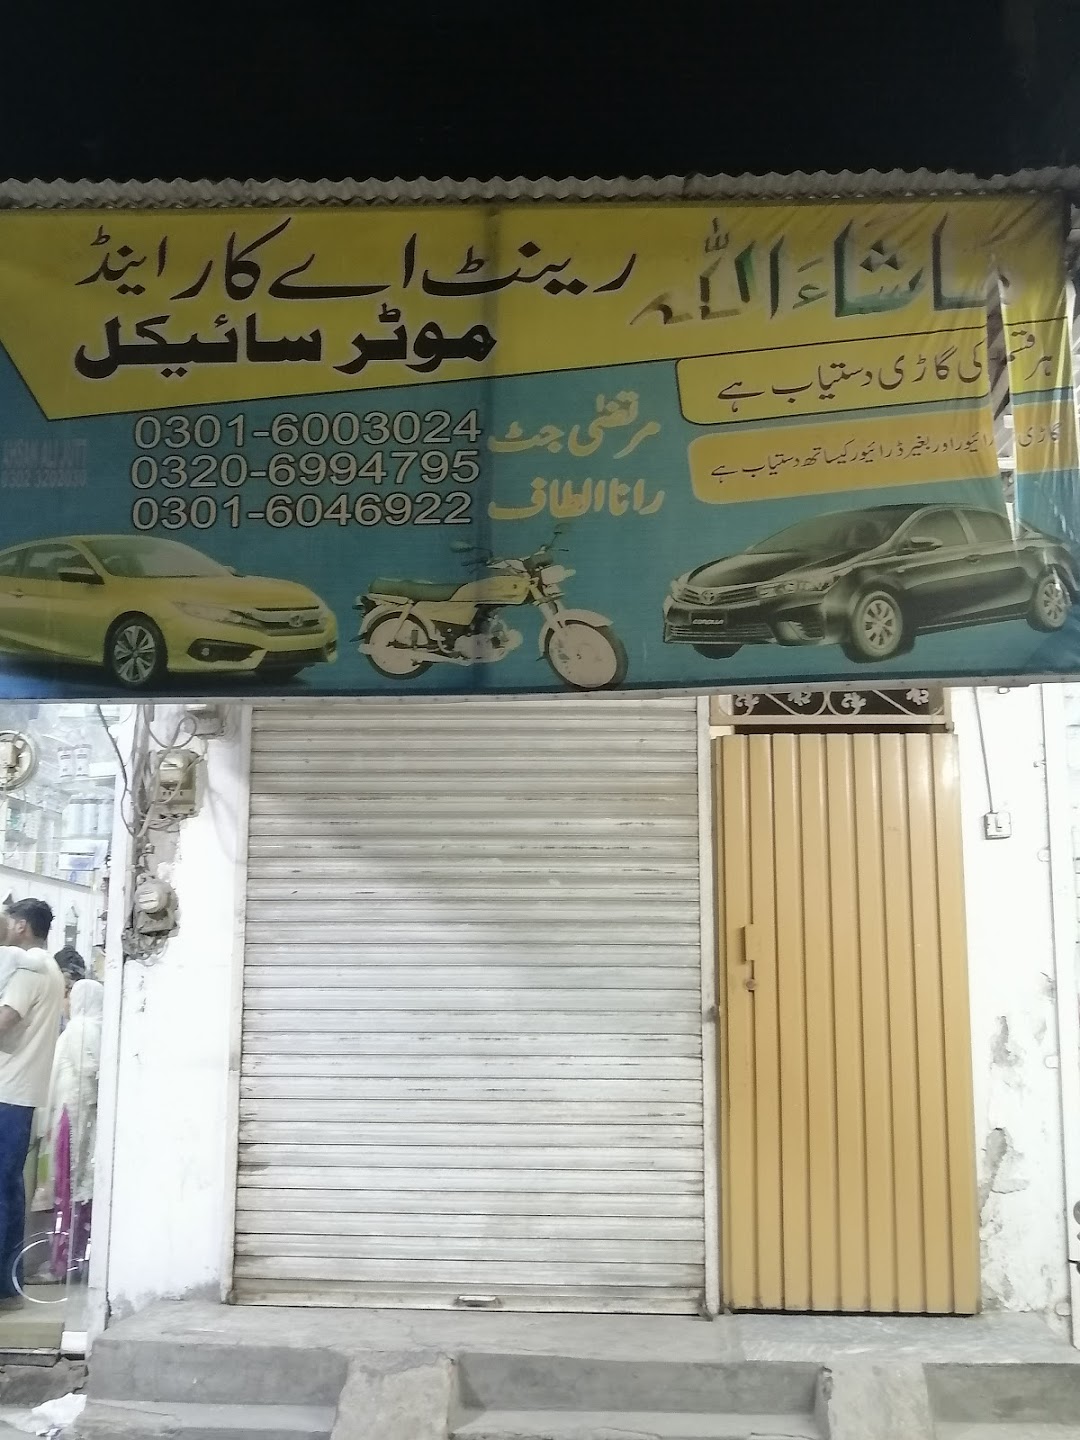 Mashallah Autos and rent a car